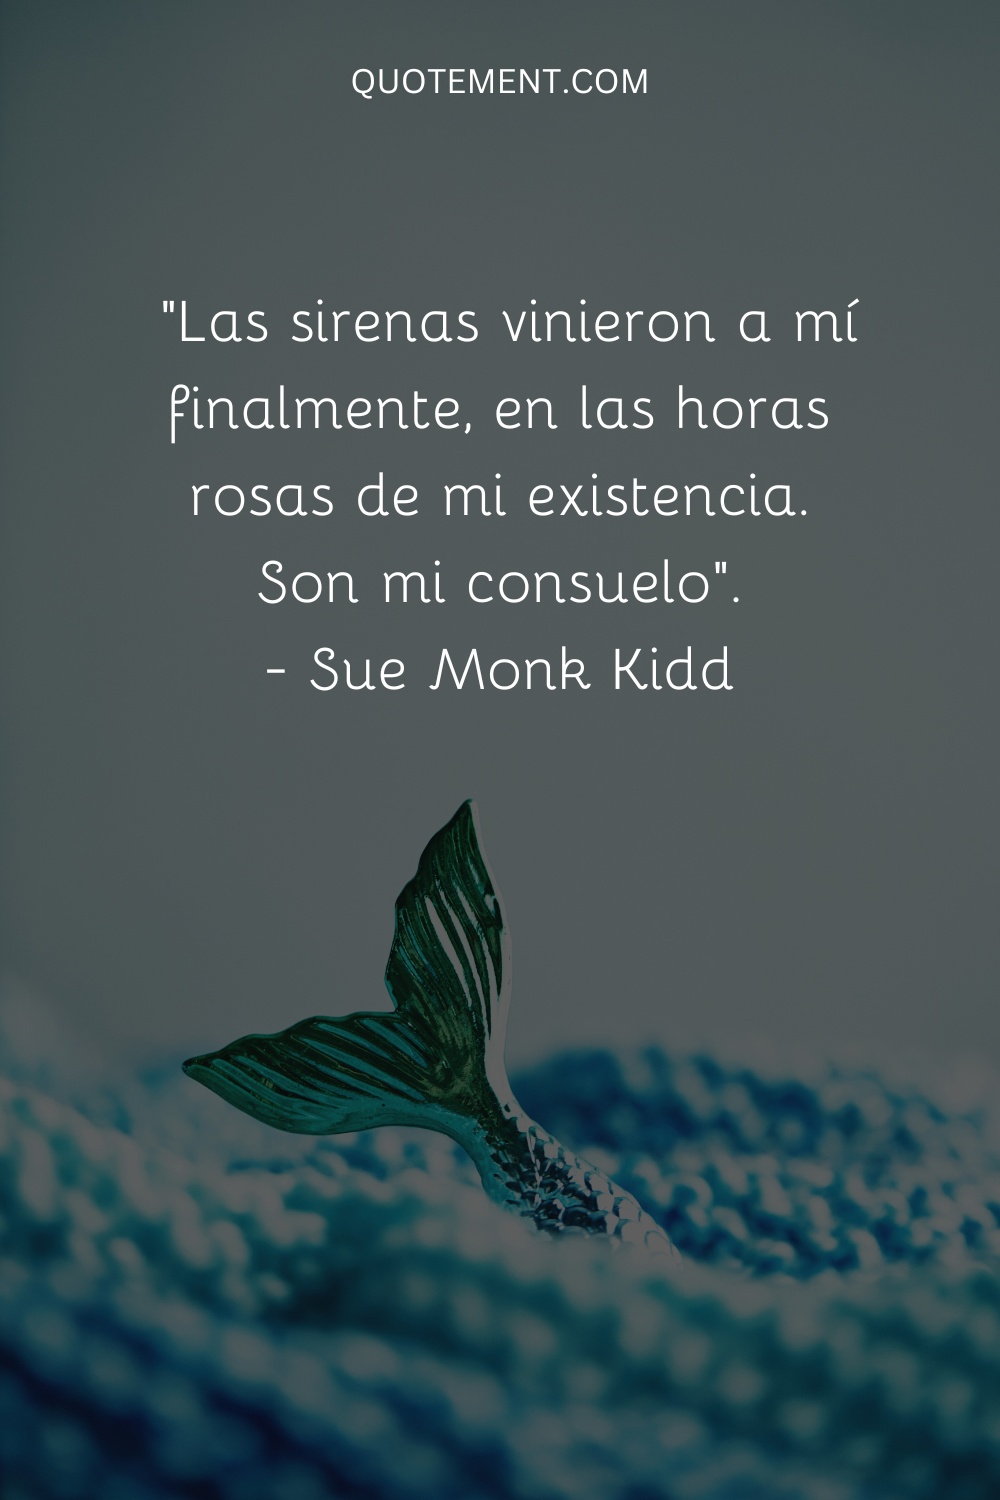 "Las sirenas vinieron a mí finalmente, en las horas rosas de mi existencia. Son mi consuelo". - Sue Monk Kidd